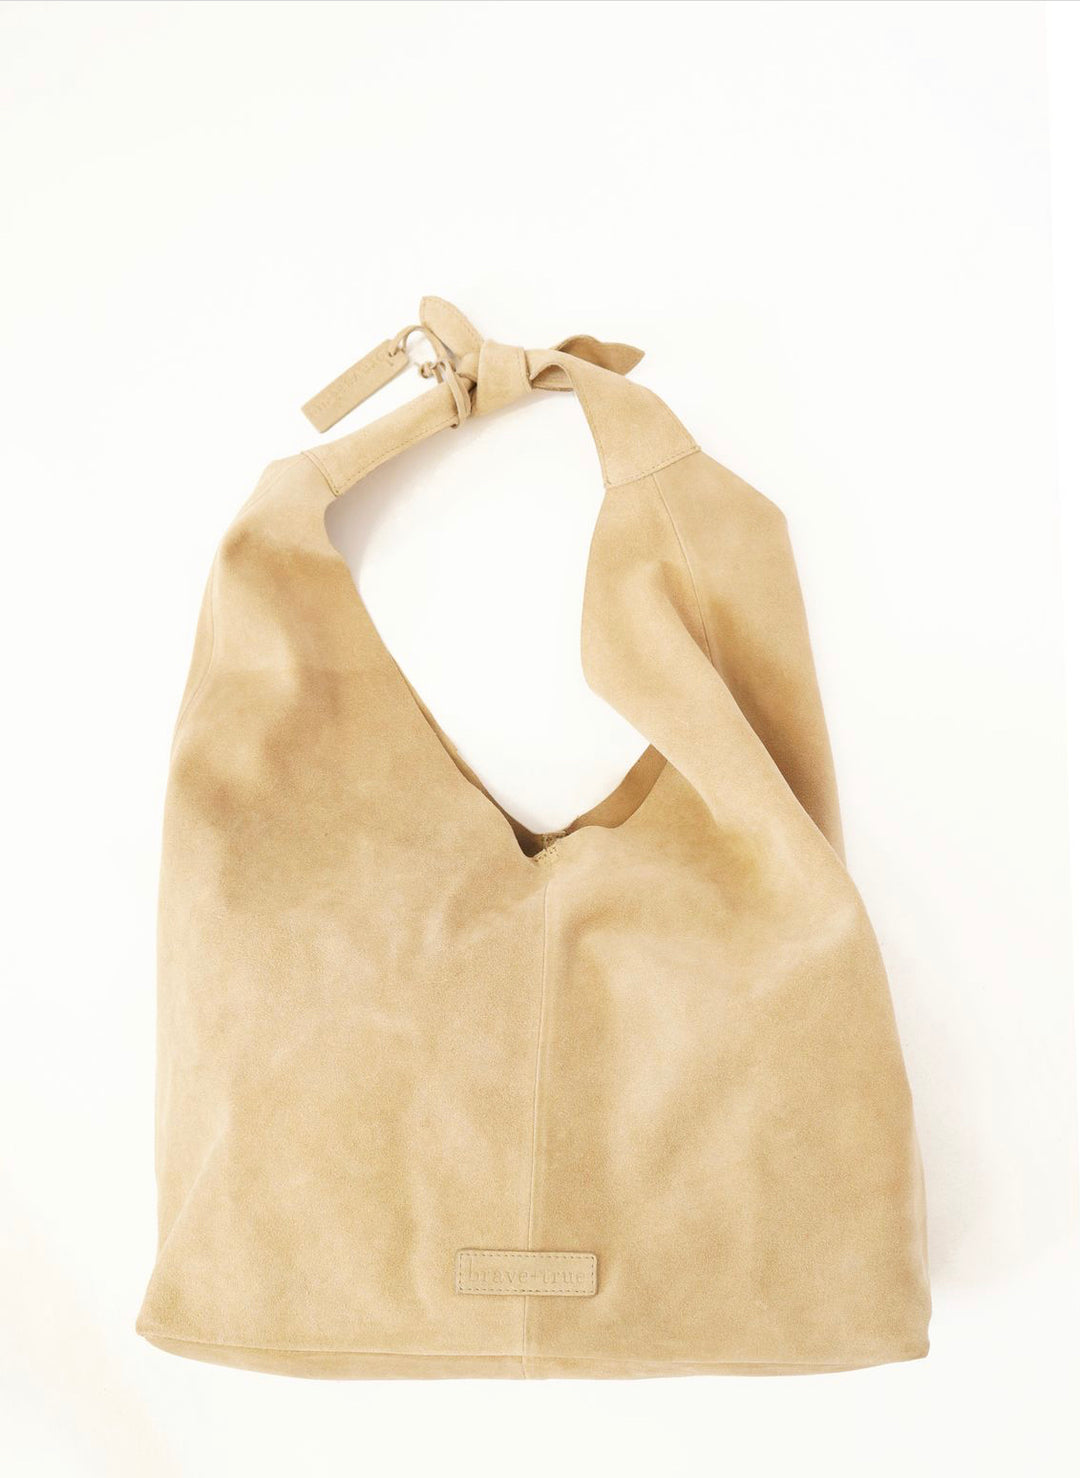 Knot Bag - Ecru Suede Bags Brave + True   